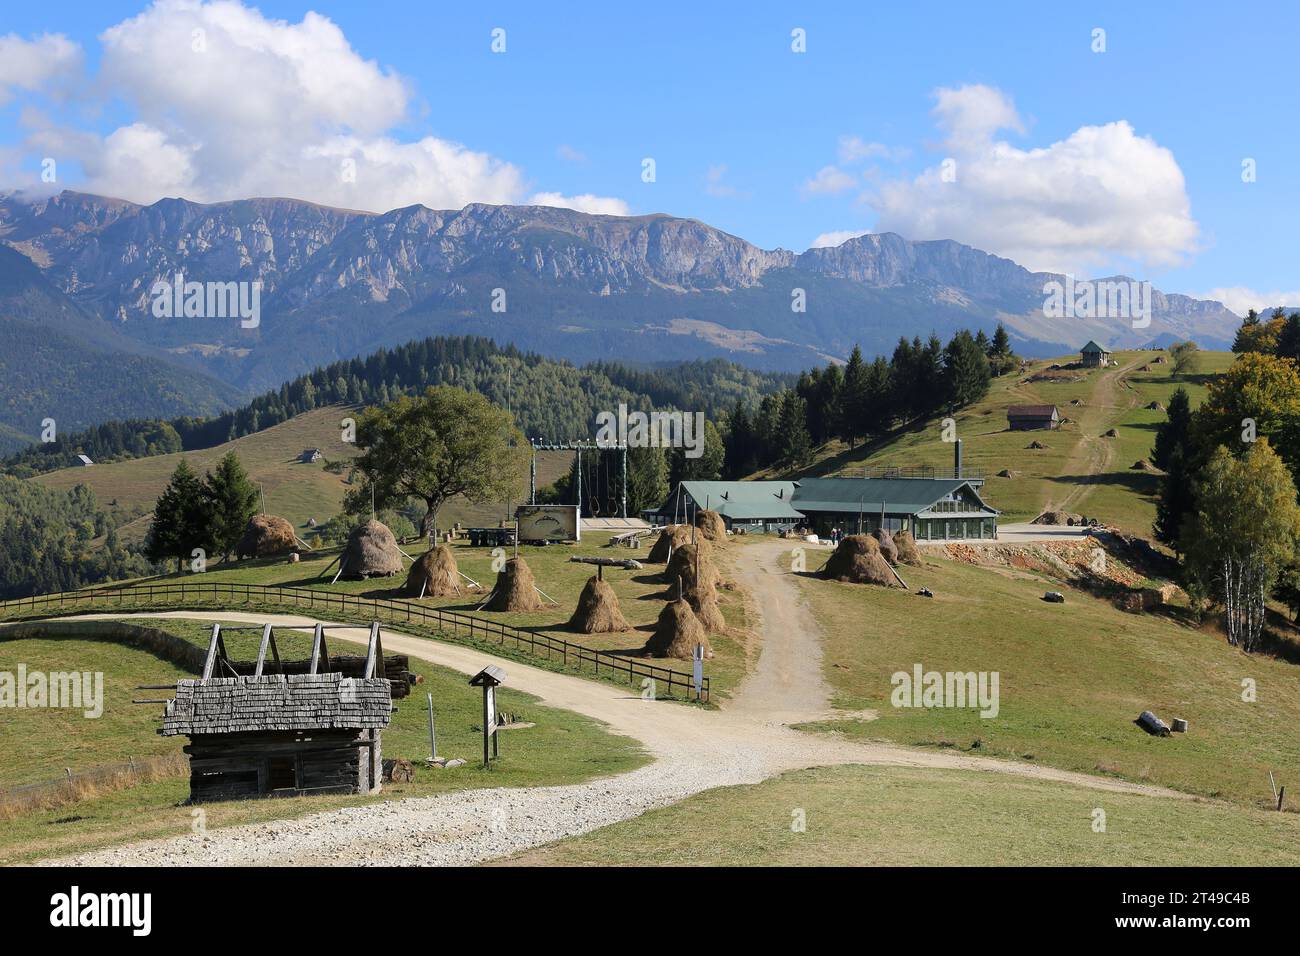 Looking SE from Amfiteatrul (Amphitheatre), Moieciu de Sus, Făgărăş Mountains, Southern Carpathians, Braşov County, Transylvania, Romania, Europe Stock Photo